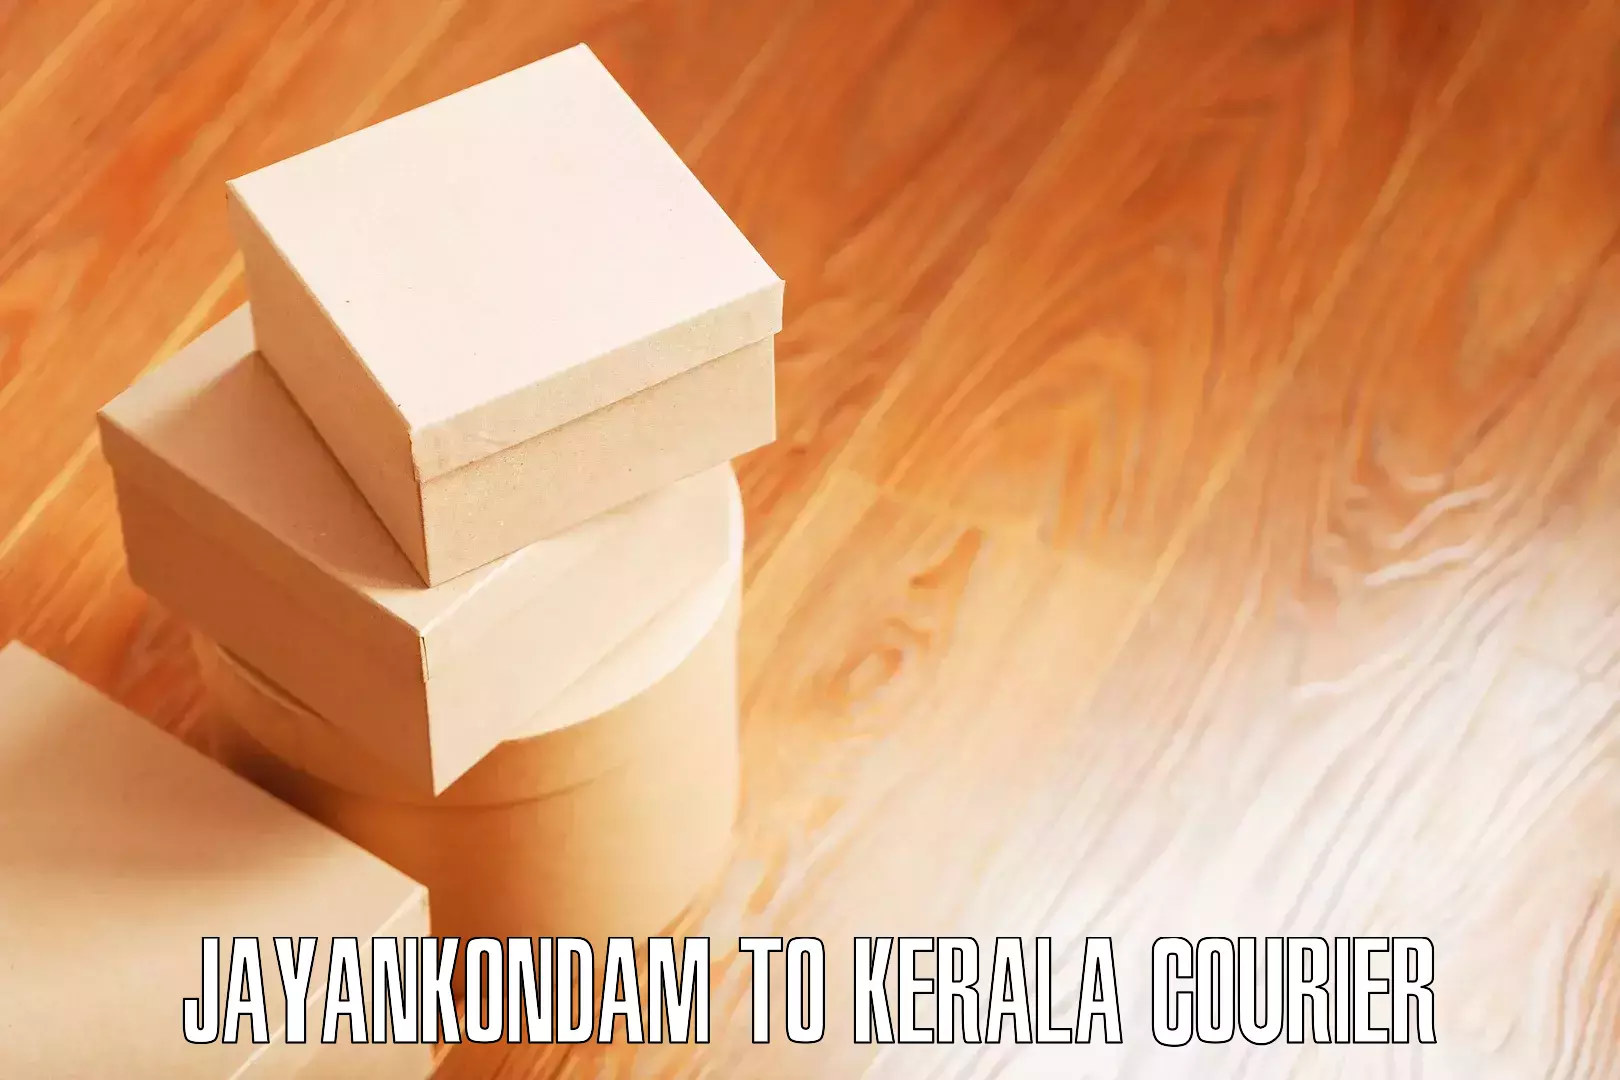 Furniture moving plans in Jayankondam to Kerala